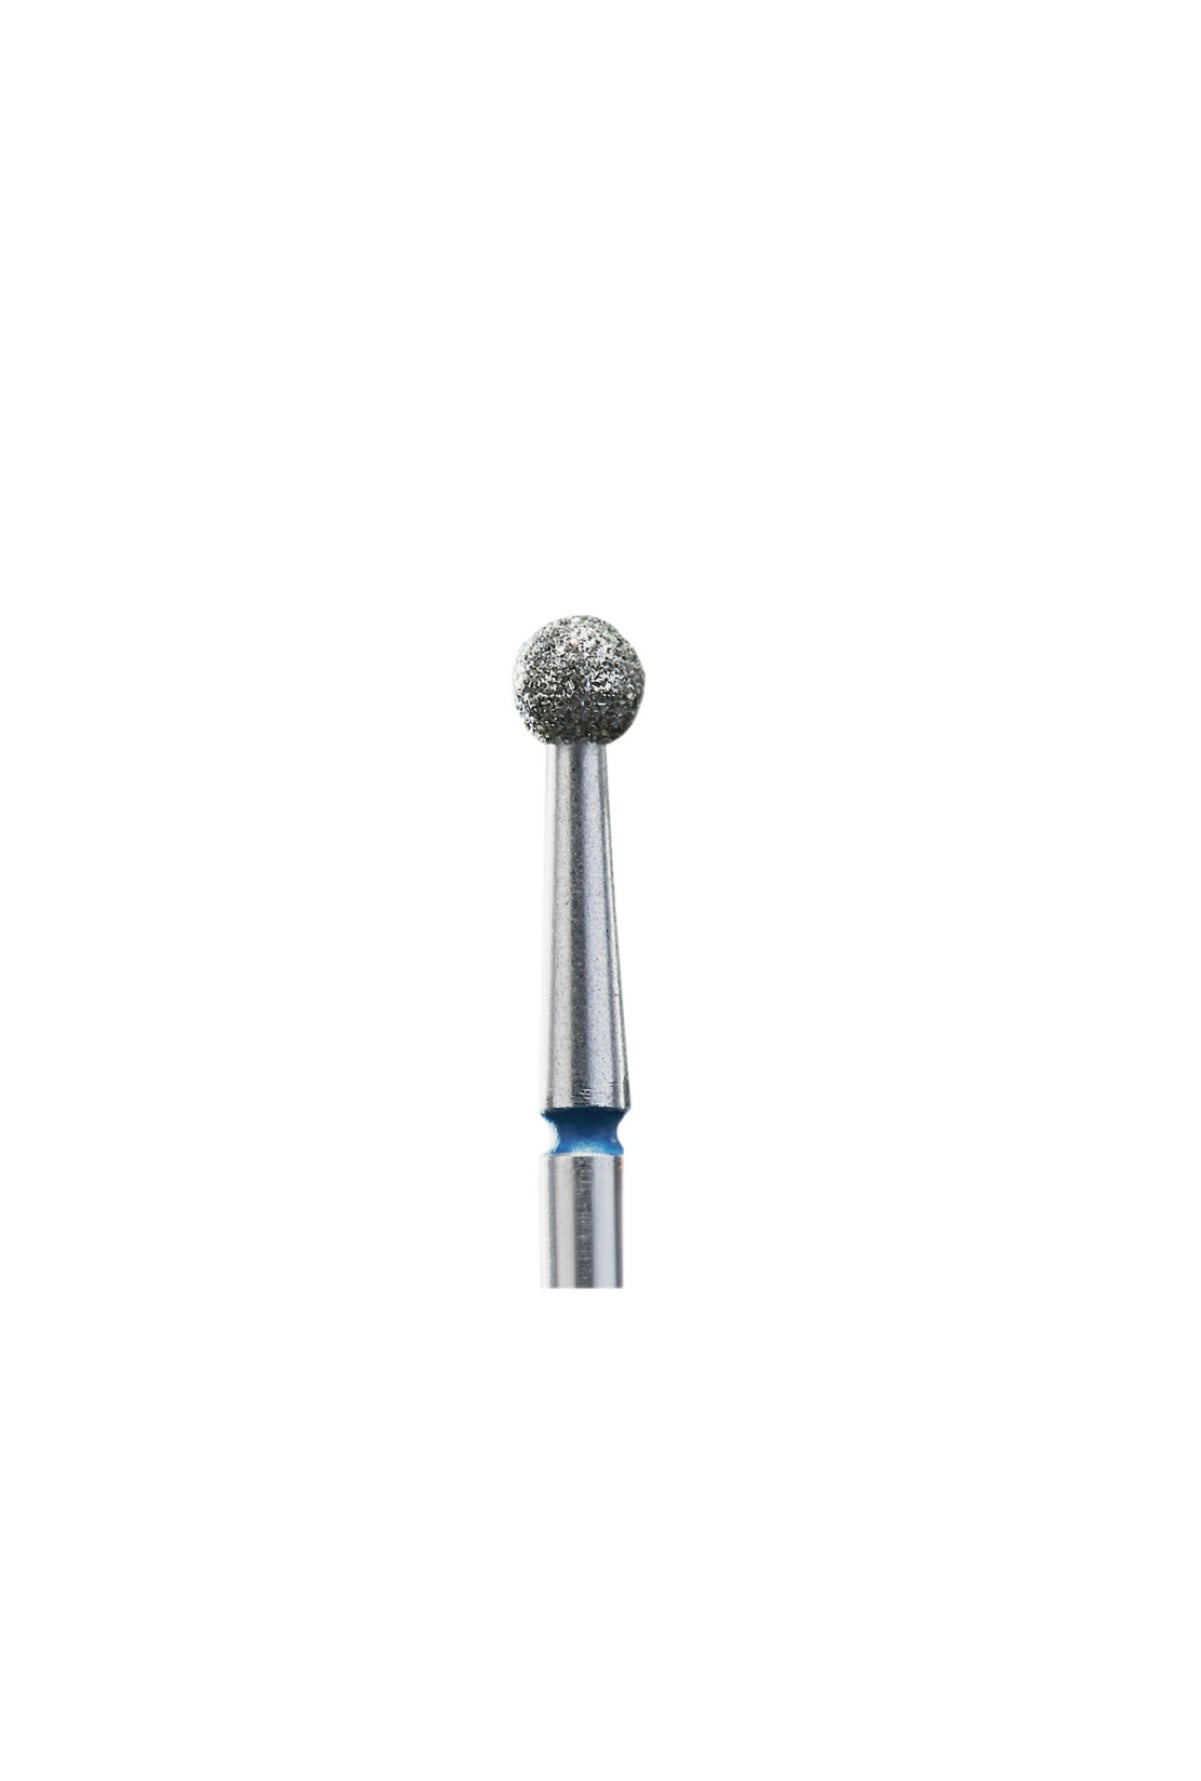 Staleks Diamond Nail Drill Bit Ball Blue 3.5mm